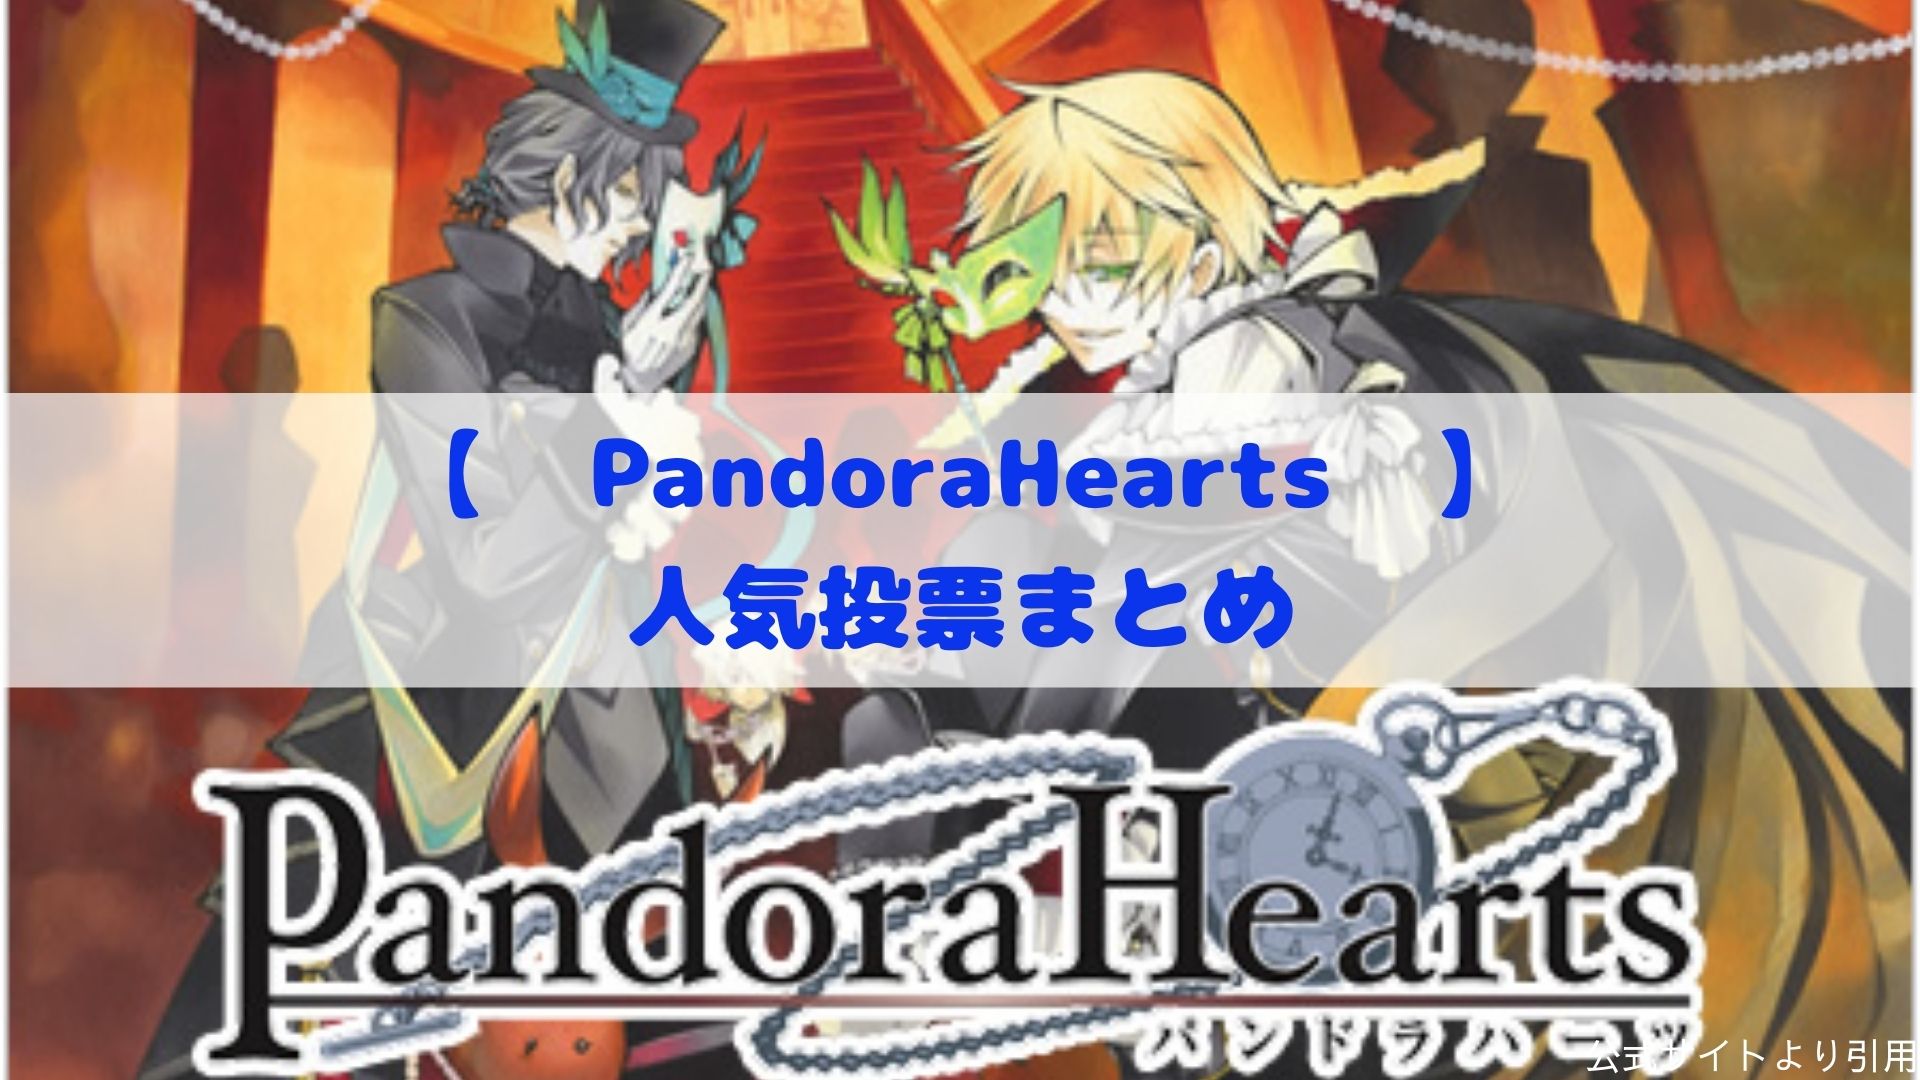 Pandorahearts 人気キャラクター コンビ他ランキングまとめ カモのなんでもランキング